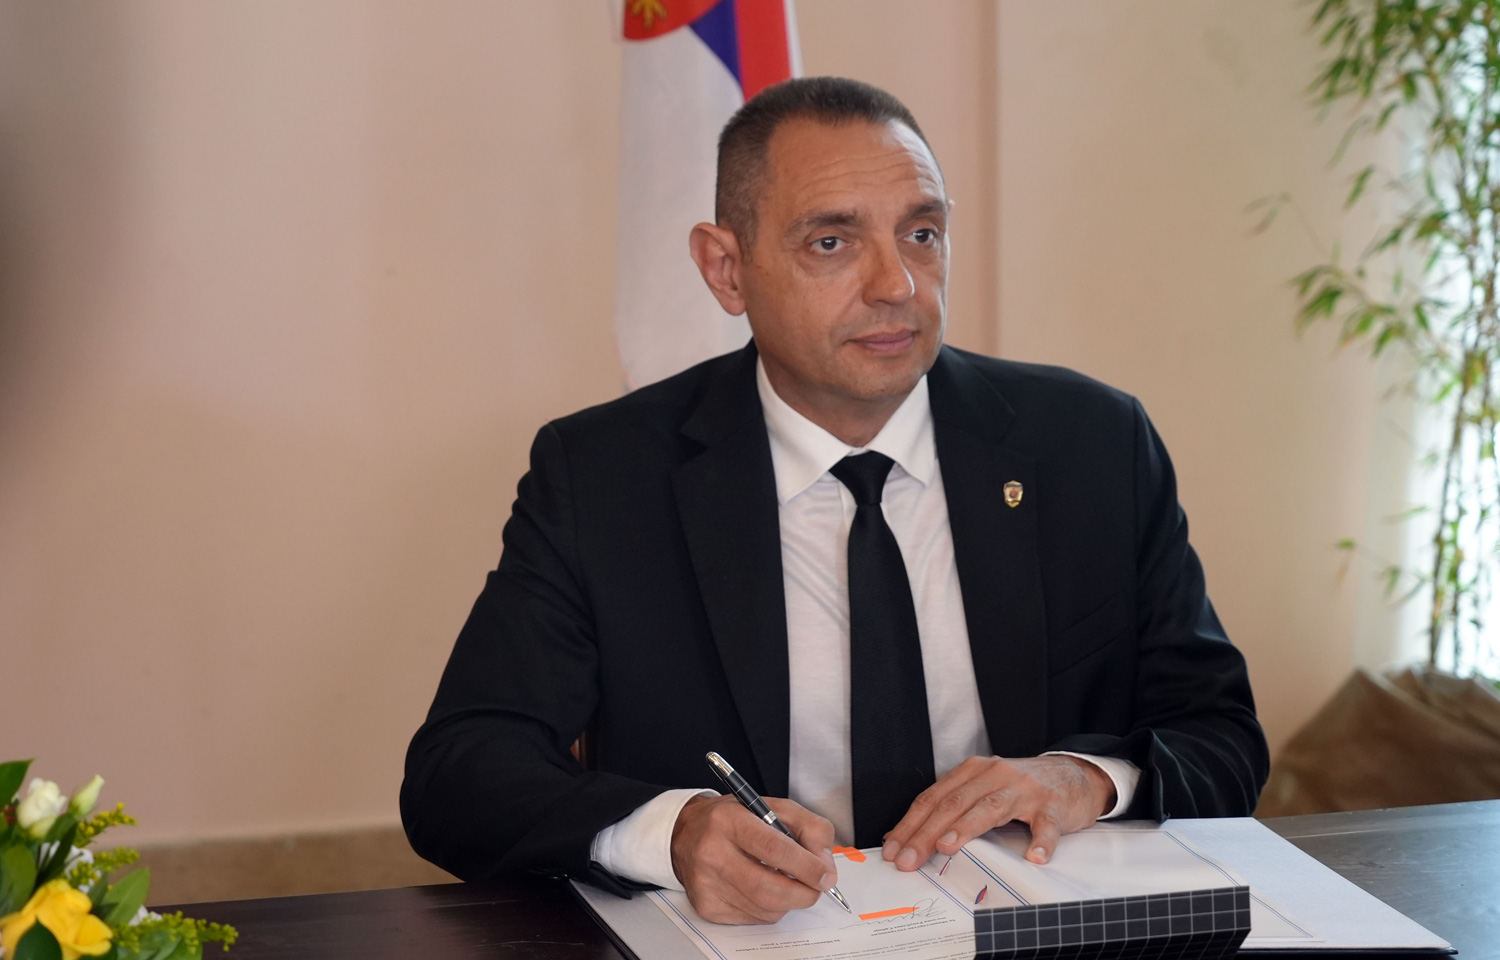 Ministri Vulin i Teodorikakos potpisali Sporazum o zajedničkim patrolama